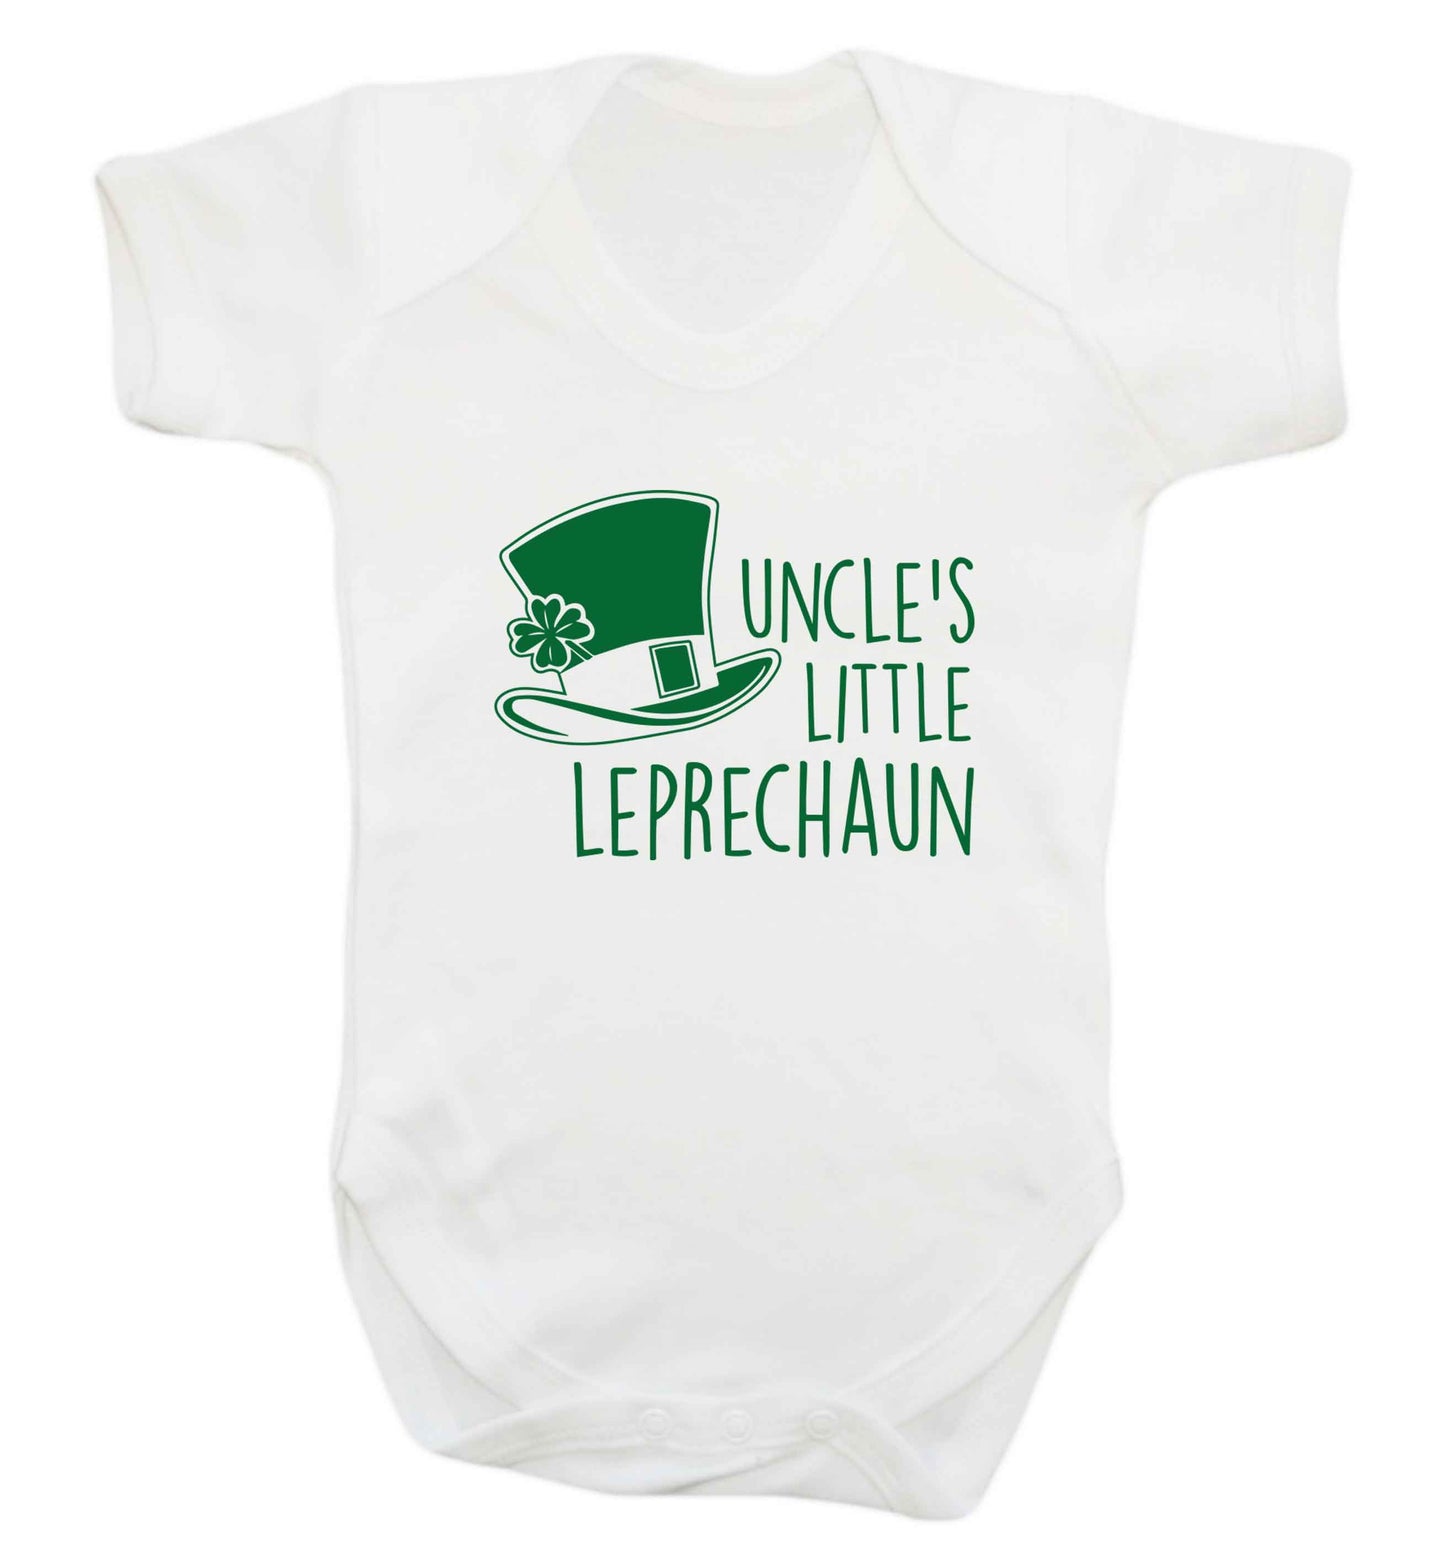 Uncles little leprechaun baby vest white 18-24 months